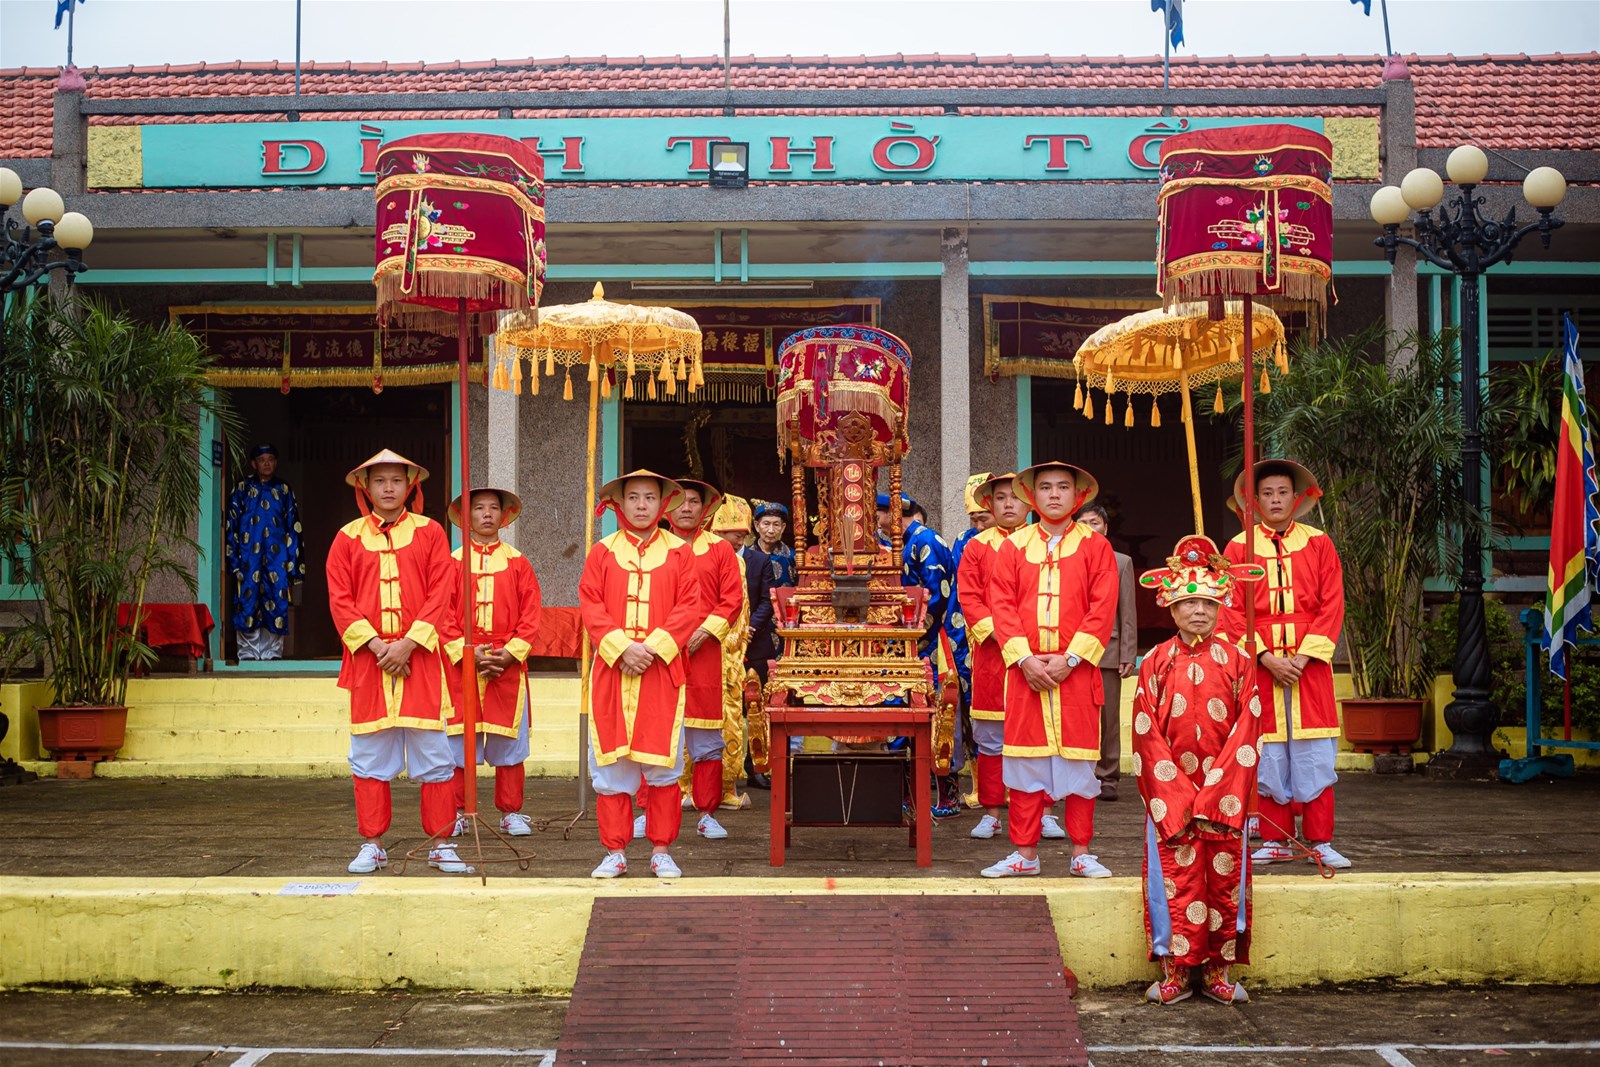 Quảng Bình: Đặc sắc lễ hội Cầu ngư tại xã Cảnh Dương